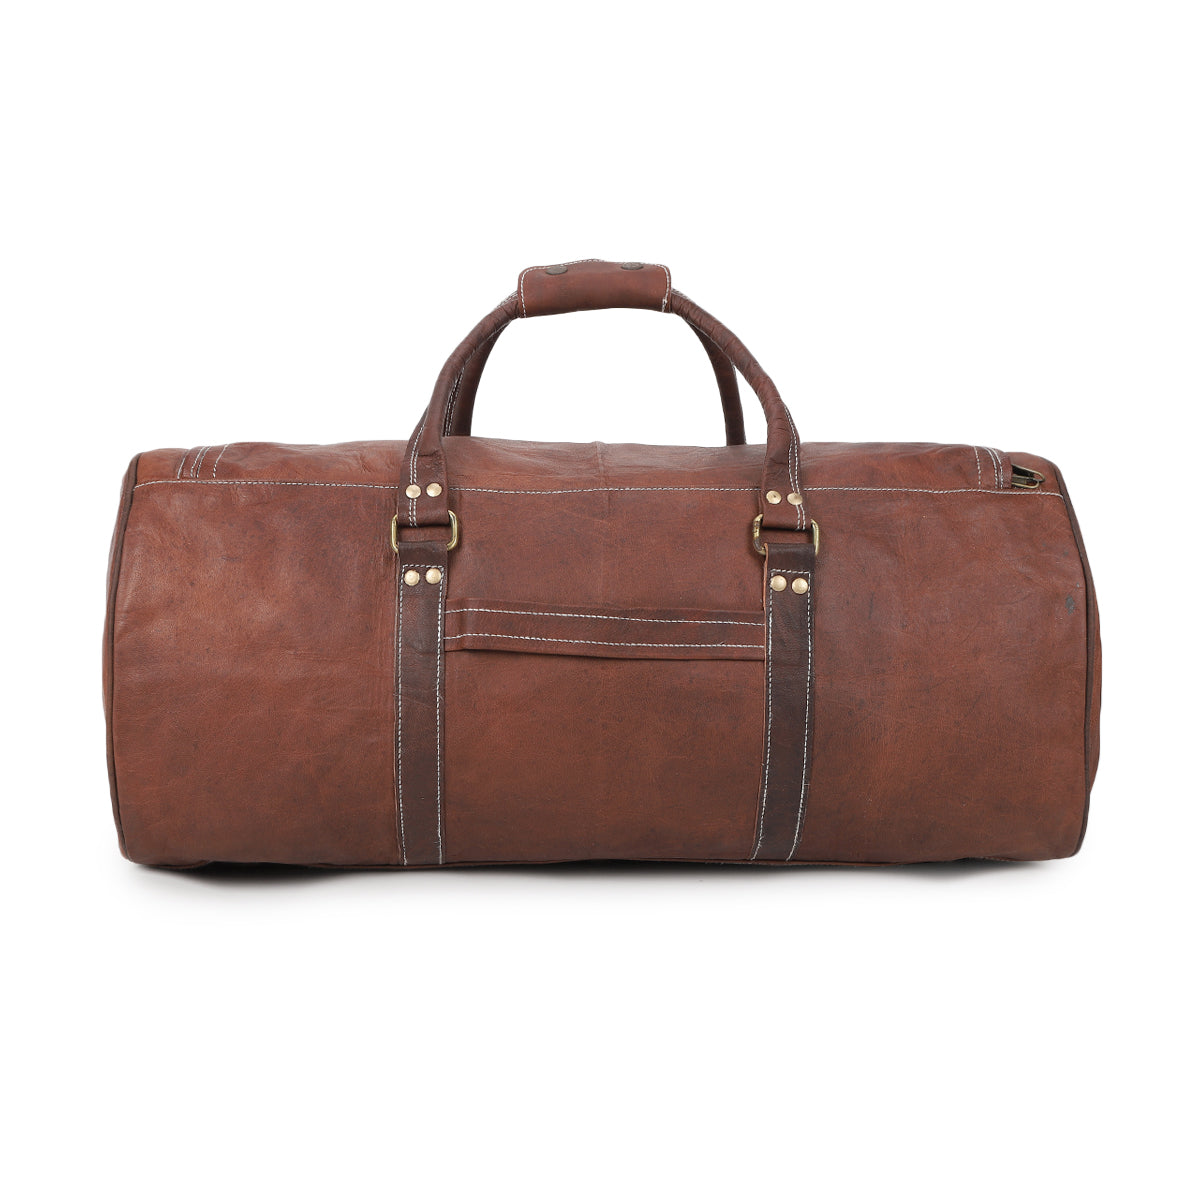 stylish travel leather duffle bag